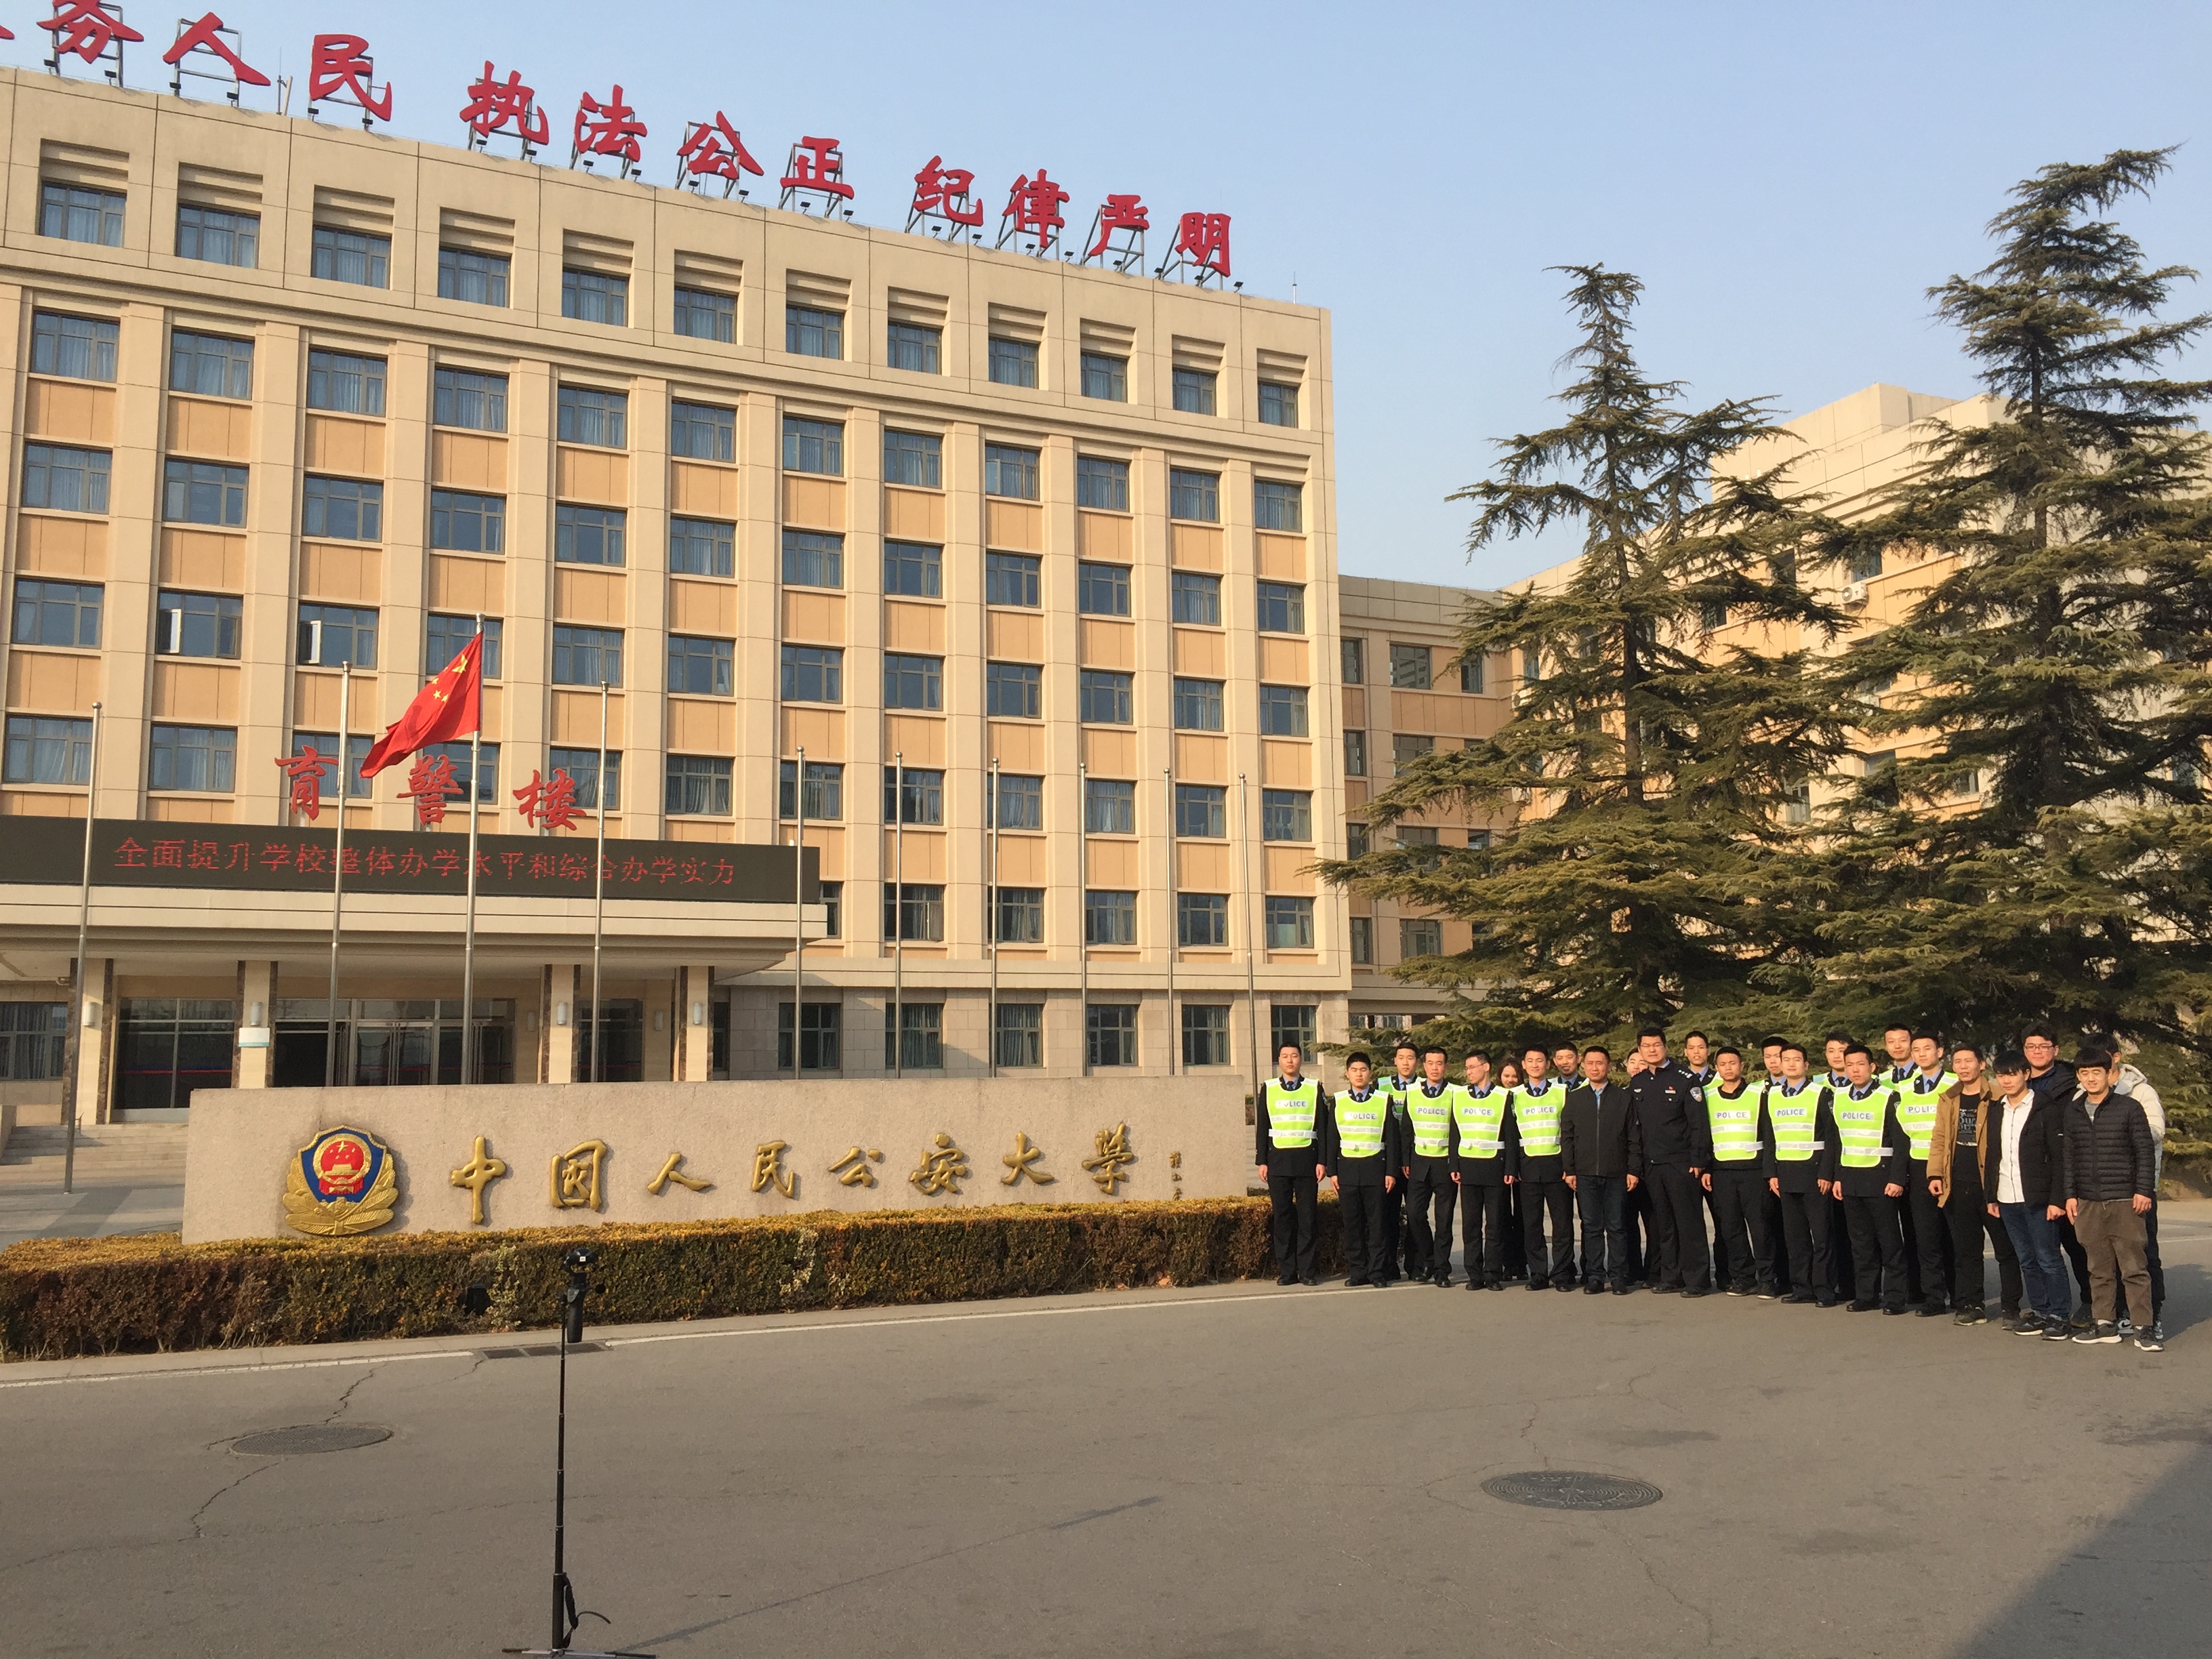 中国人民公安大学《无人机警务驾驶课程》正式开课啦!